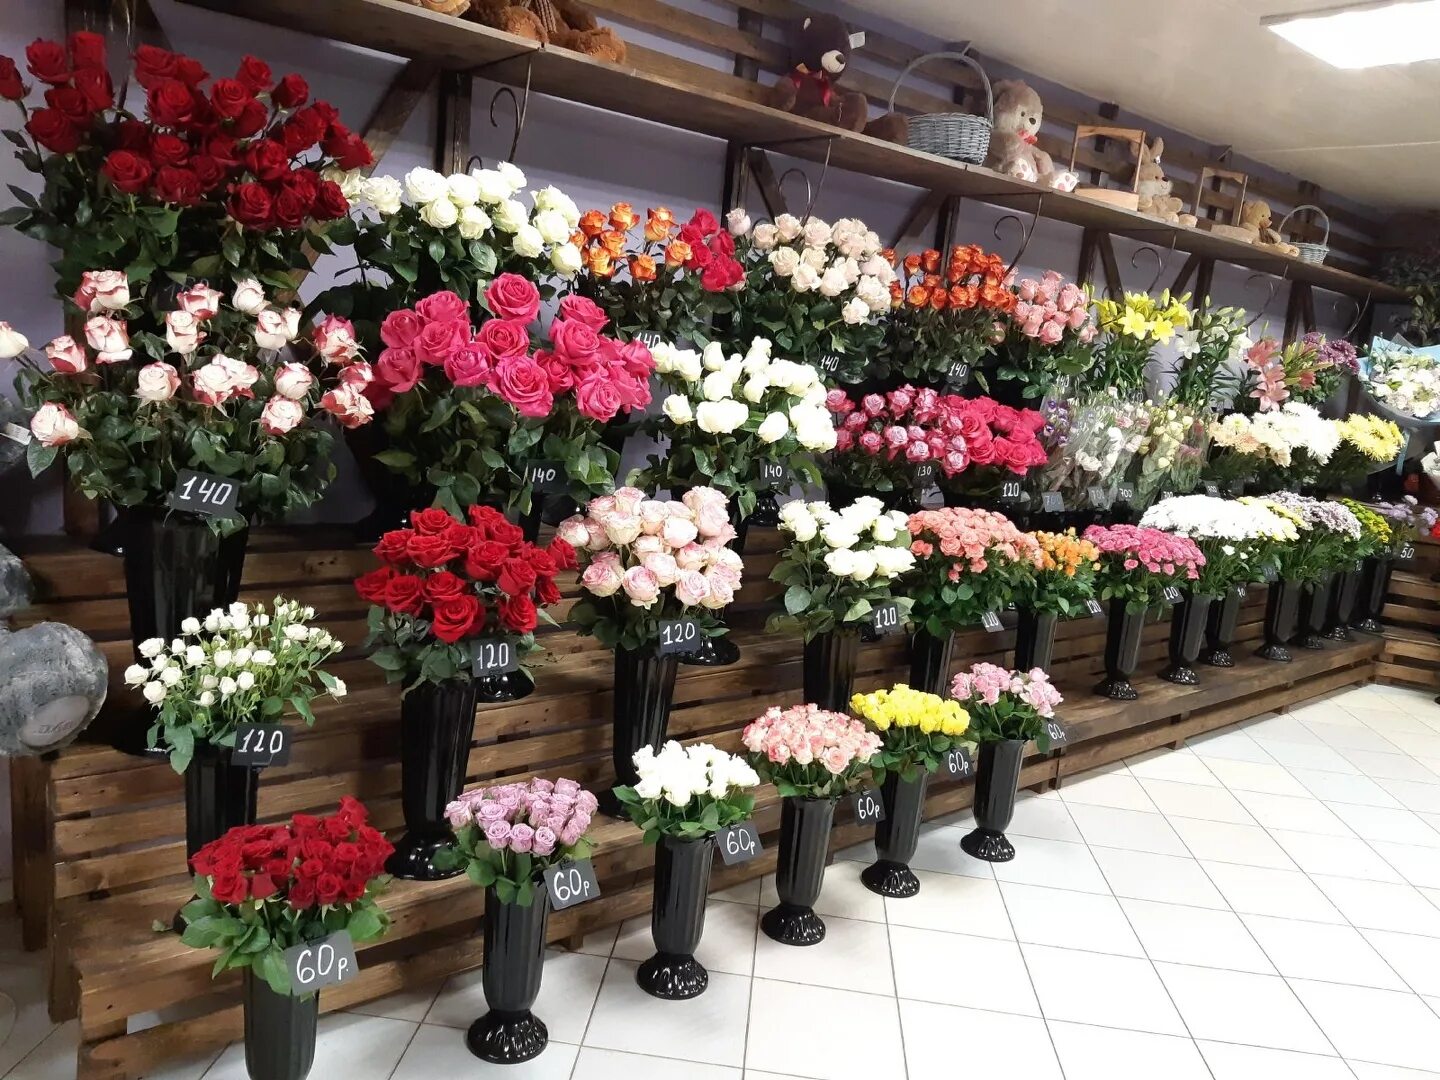 Цветочный магазин кызыл. Цветы в магазине. Цветочный магазин. Цветы магазин цветов. Цветы магазинные.